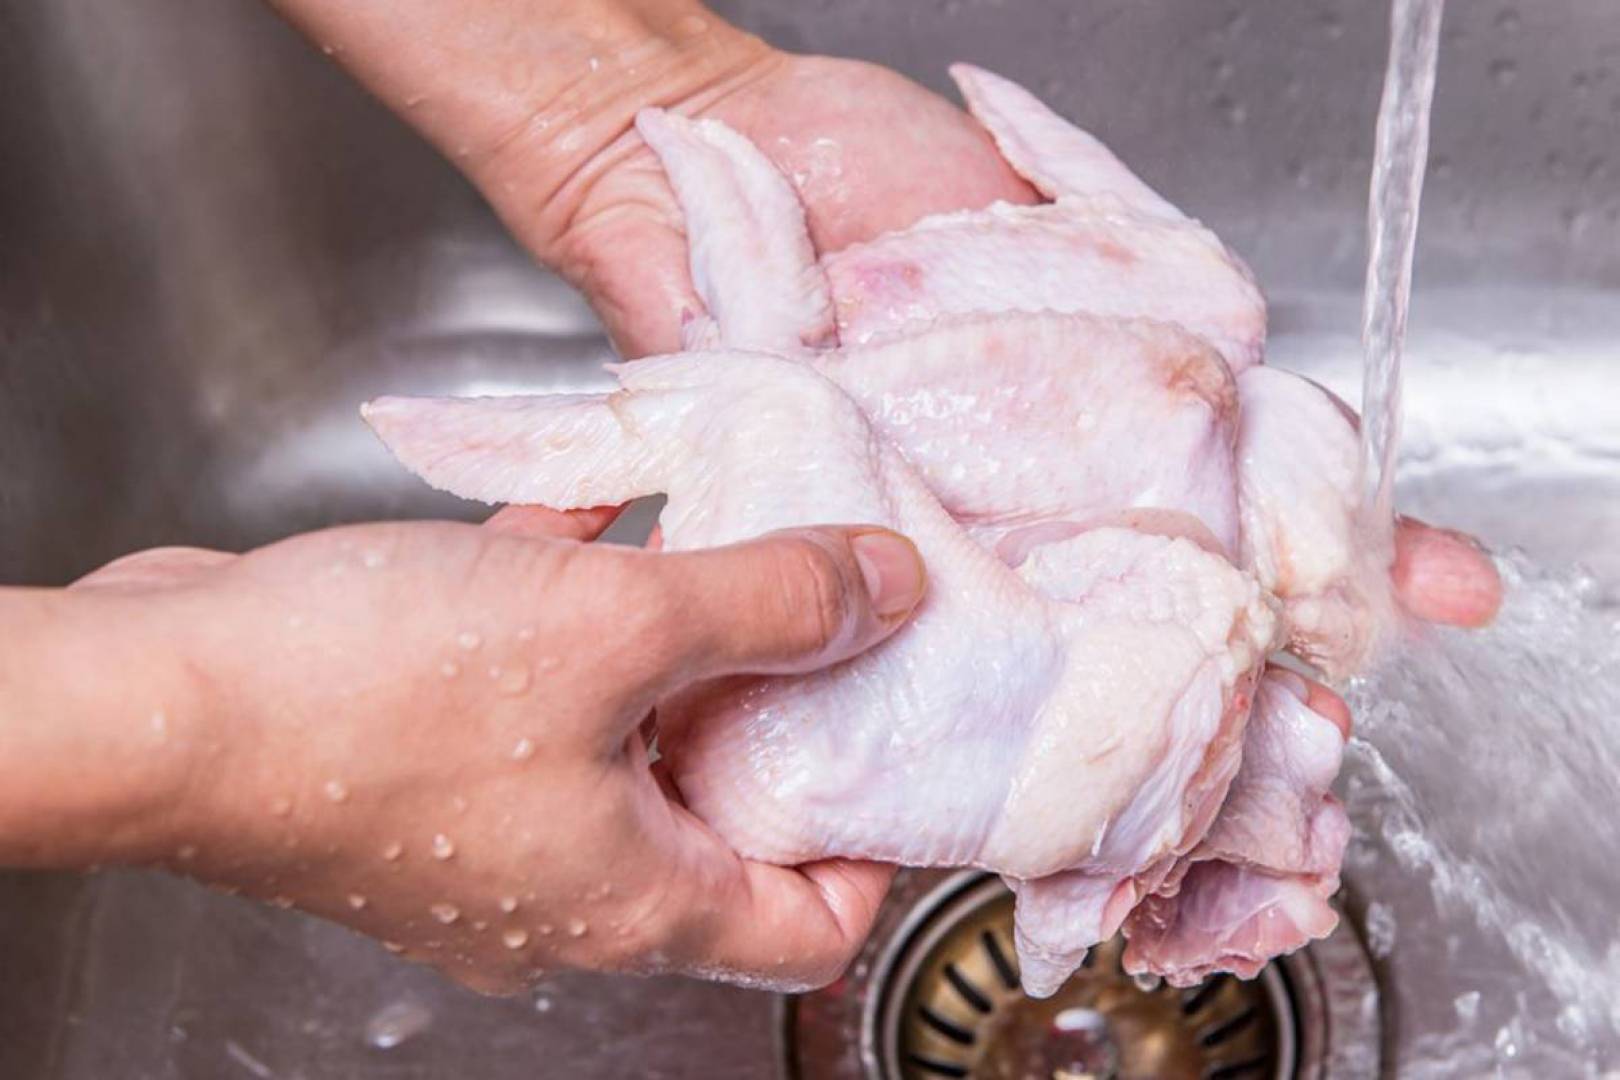 مجموعه نصائح سهلة لطهي الدجاج النيء